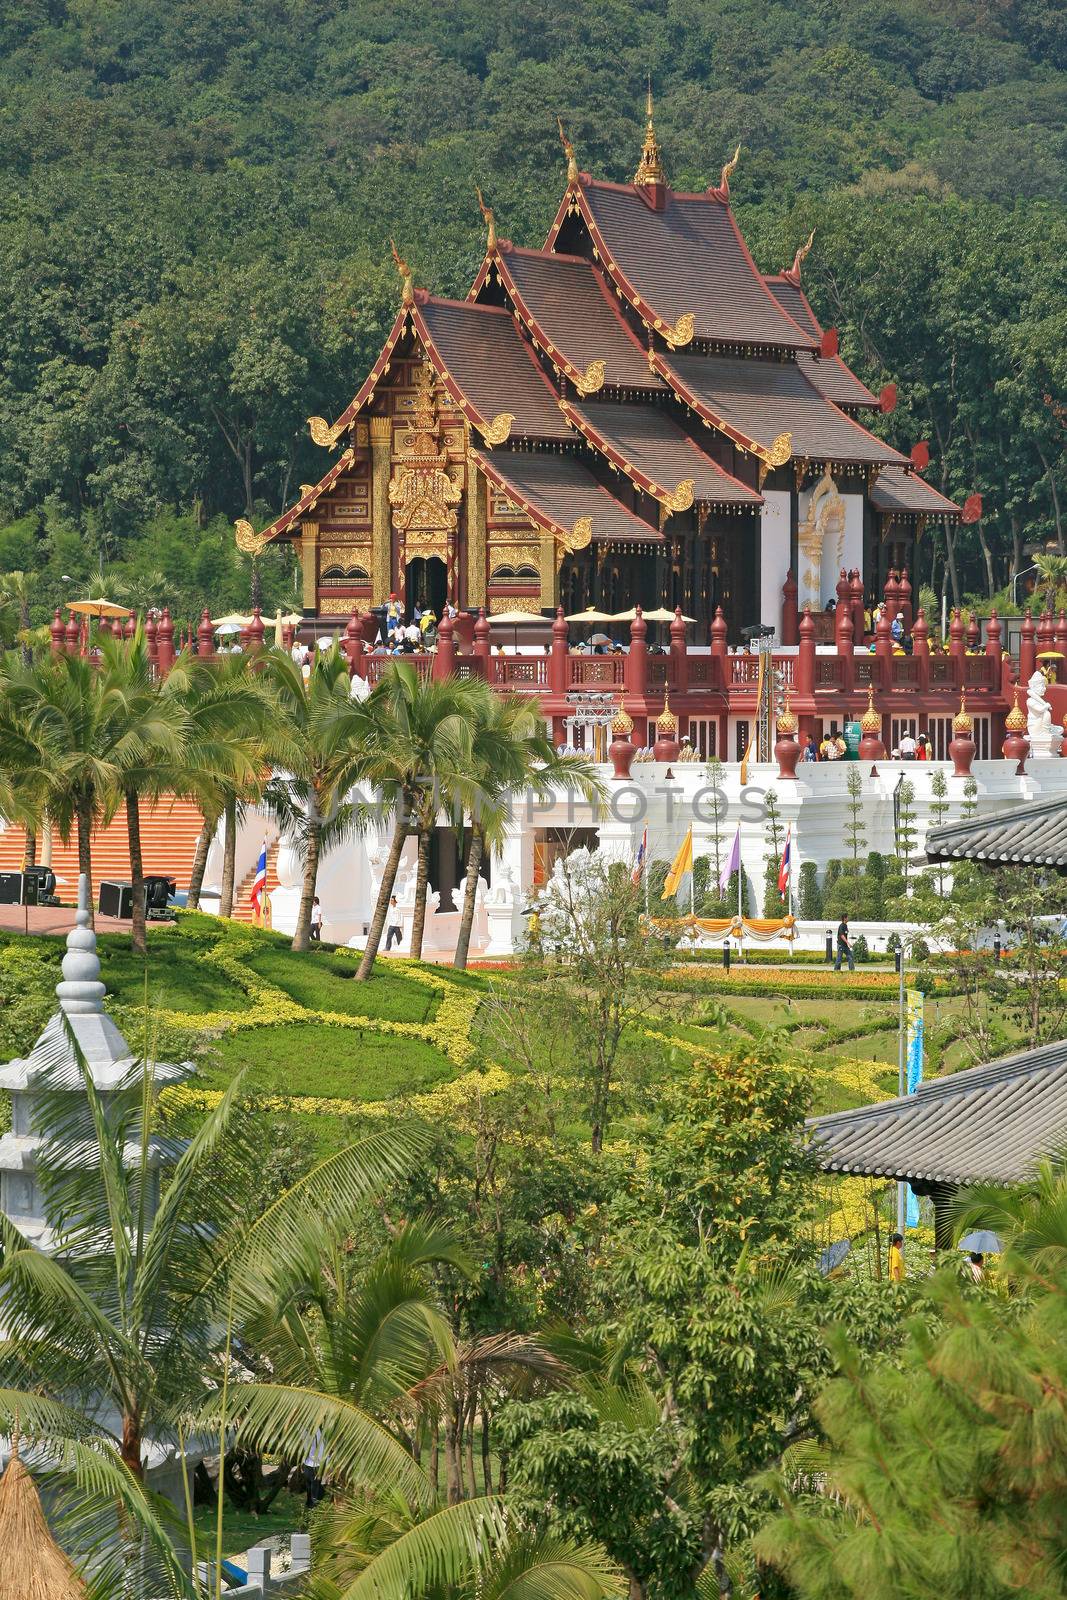 Royal Pavilion (Ho Kum Luang) at Royal Flora Expo, Chiang Mai, T by think4photop